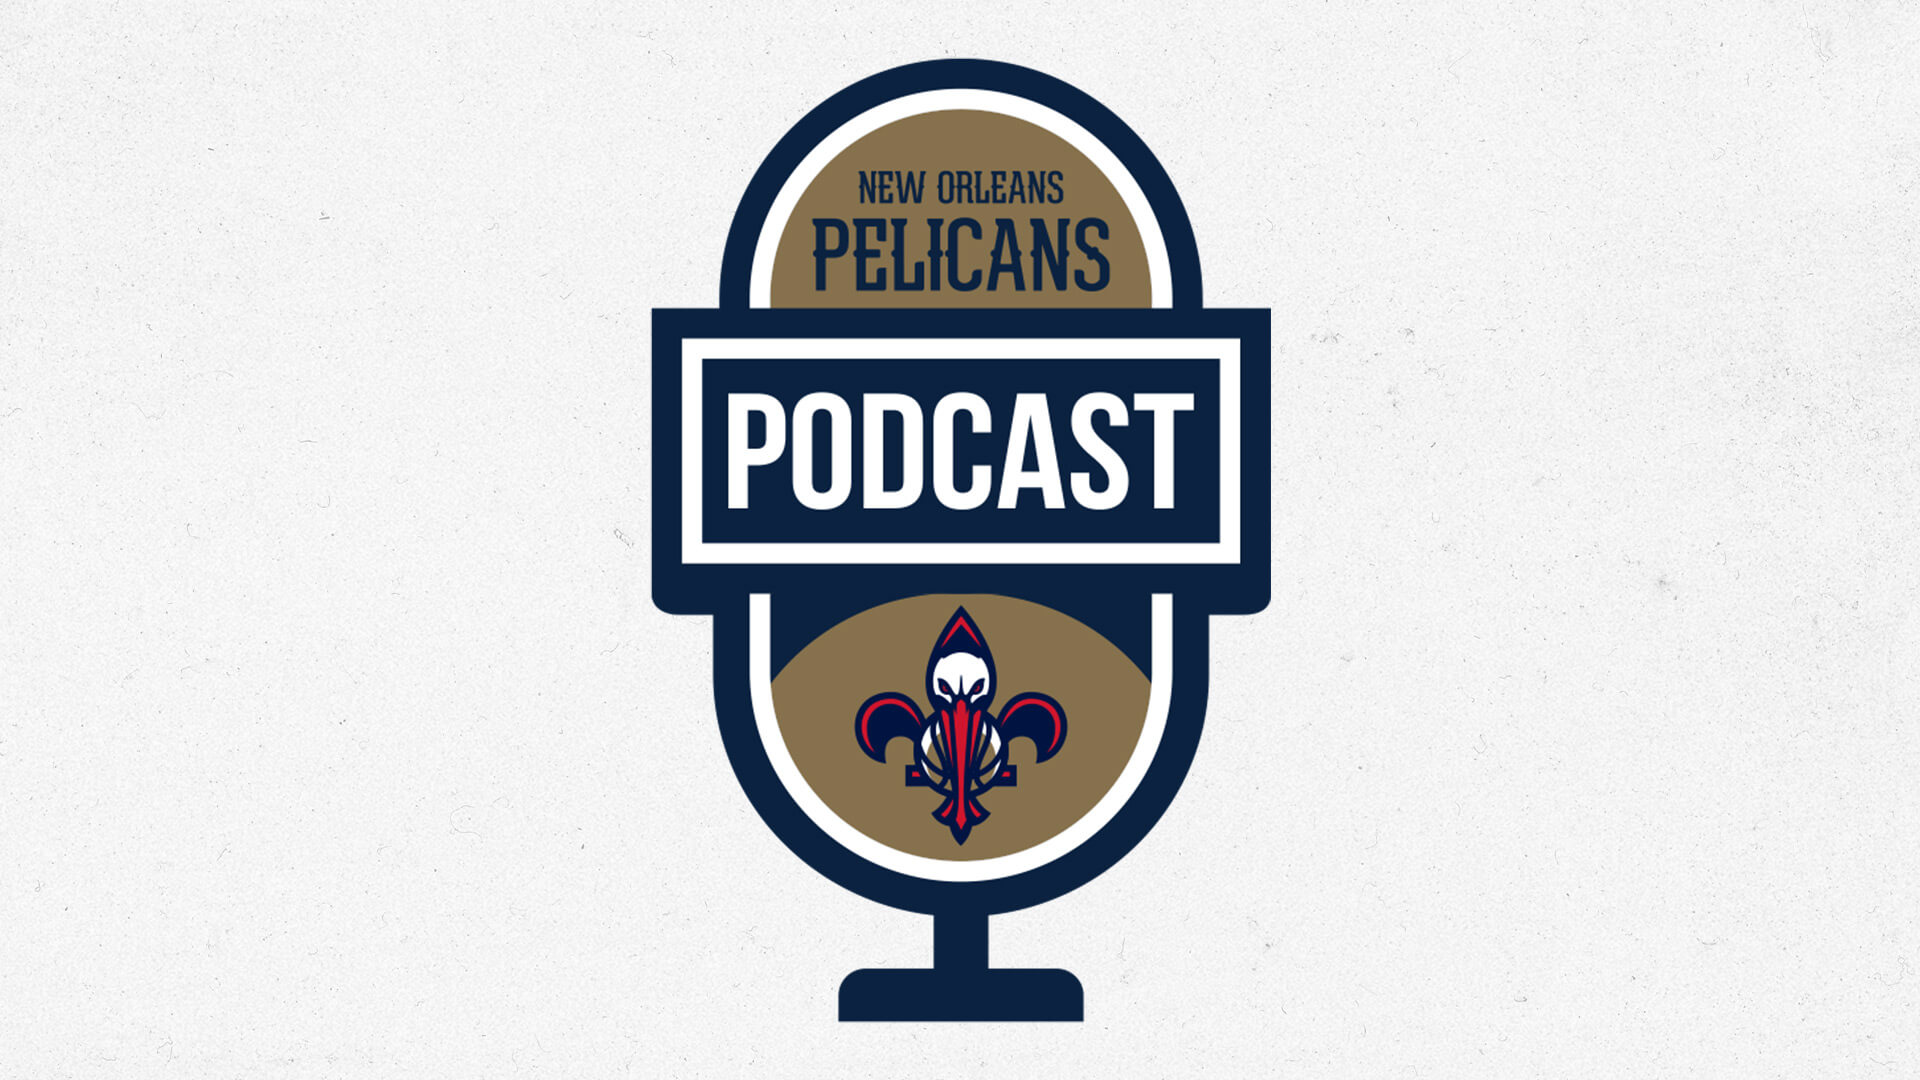 Larry Nance Jr., Willy Hernangomez on weekend win vs. Lakers, Kings | Pelicans Podcast